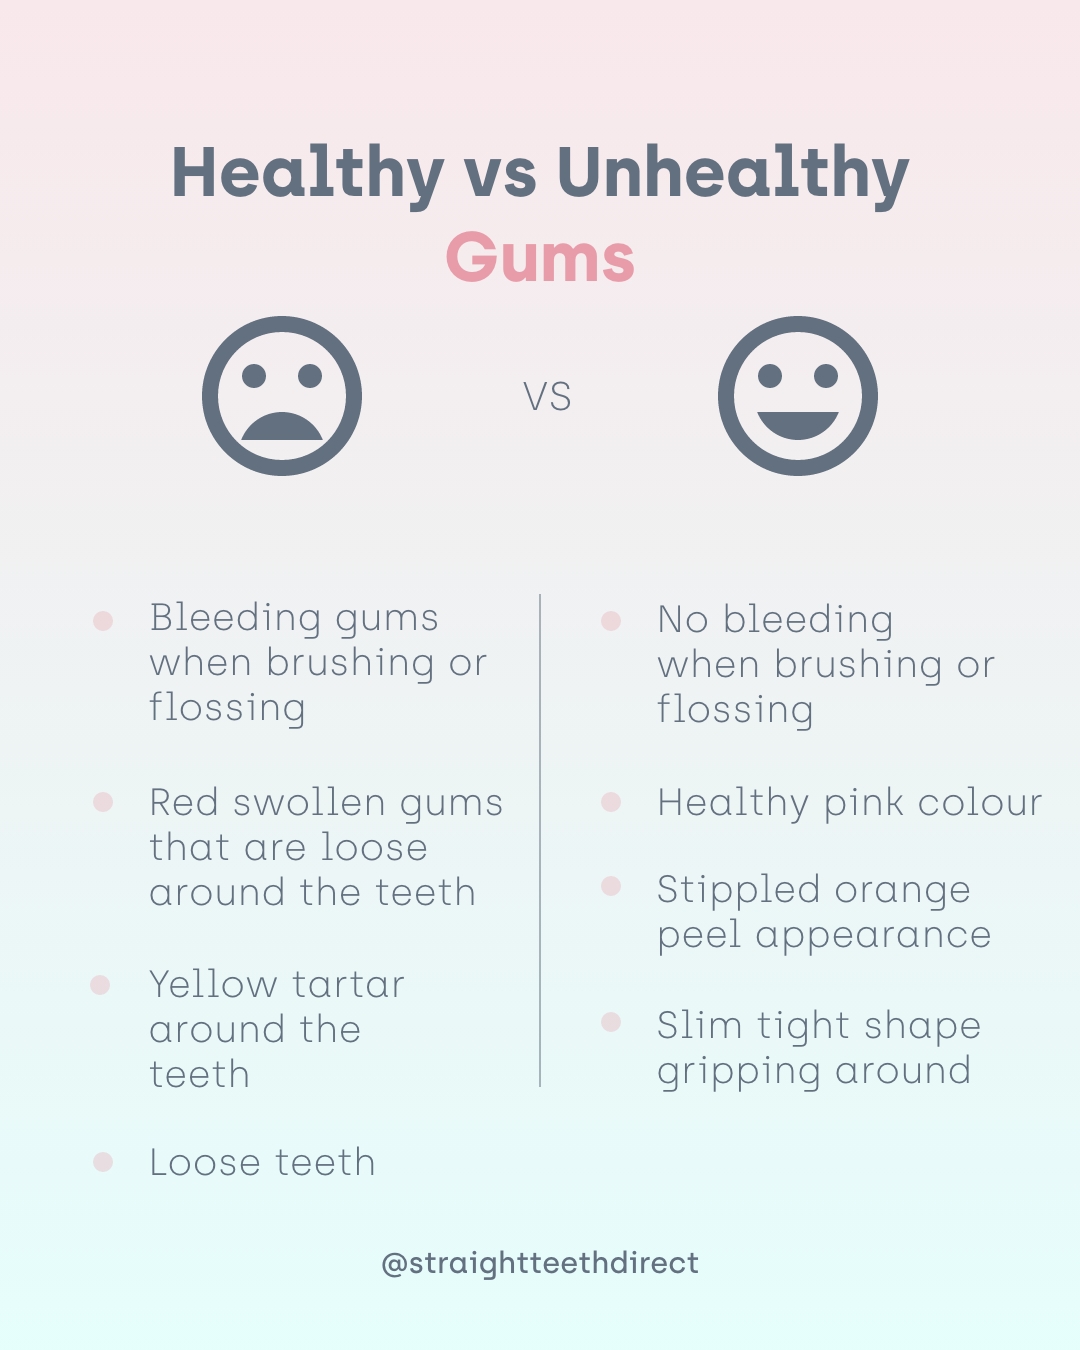 Healthy vs unhealthy gums